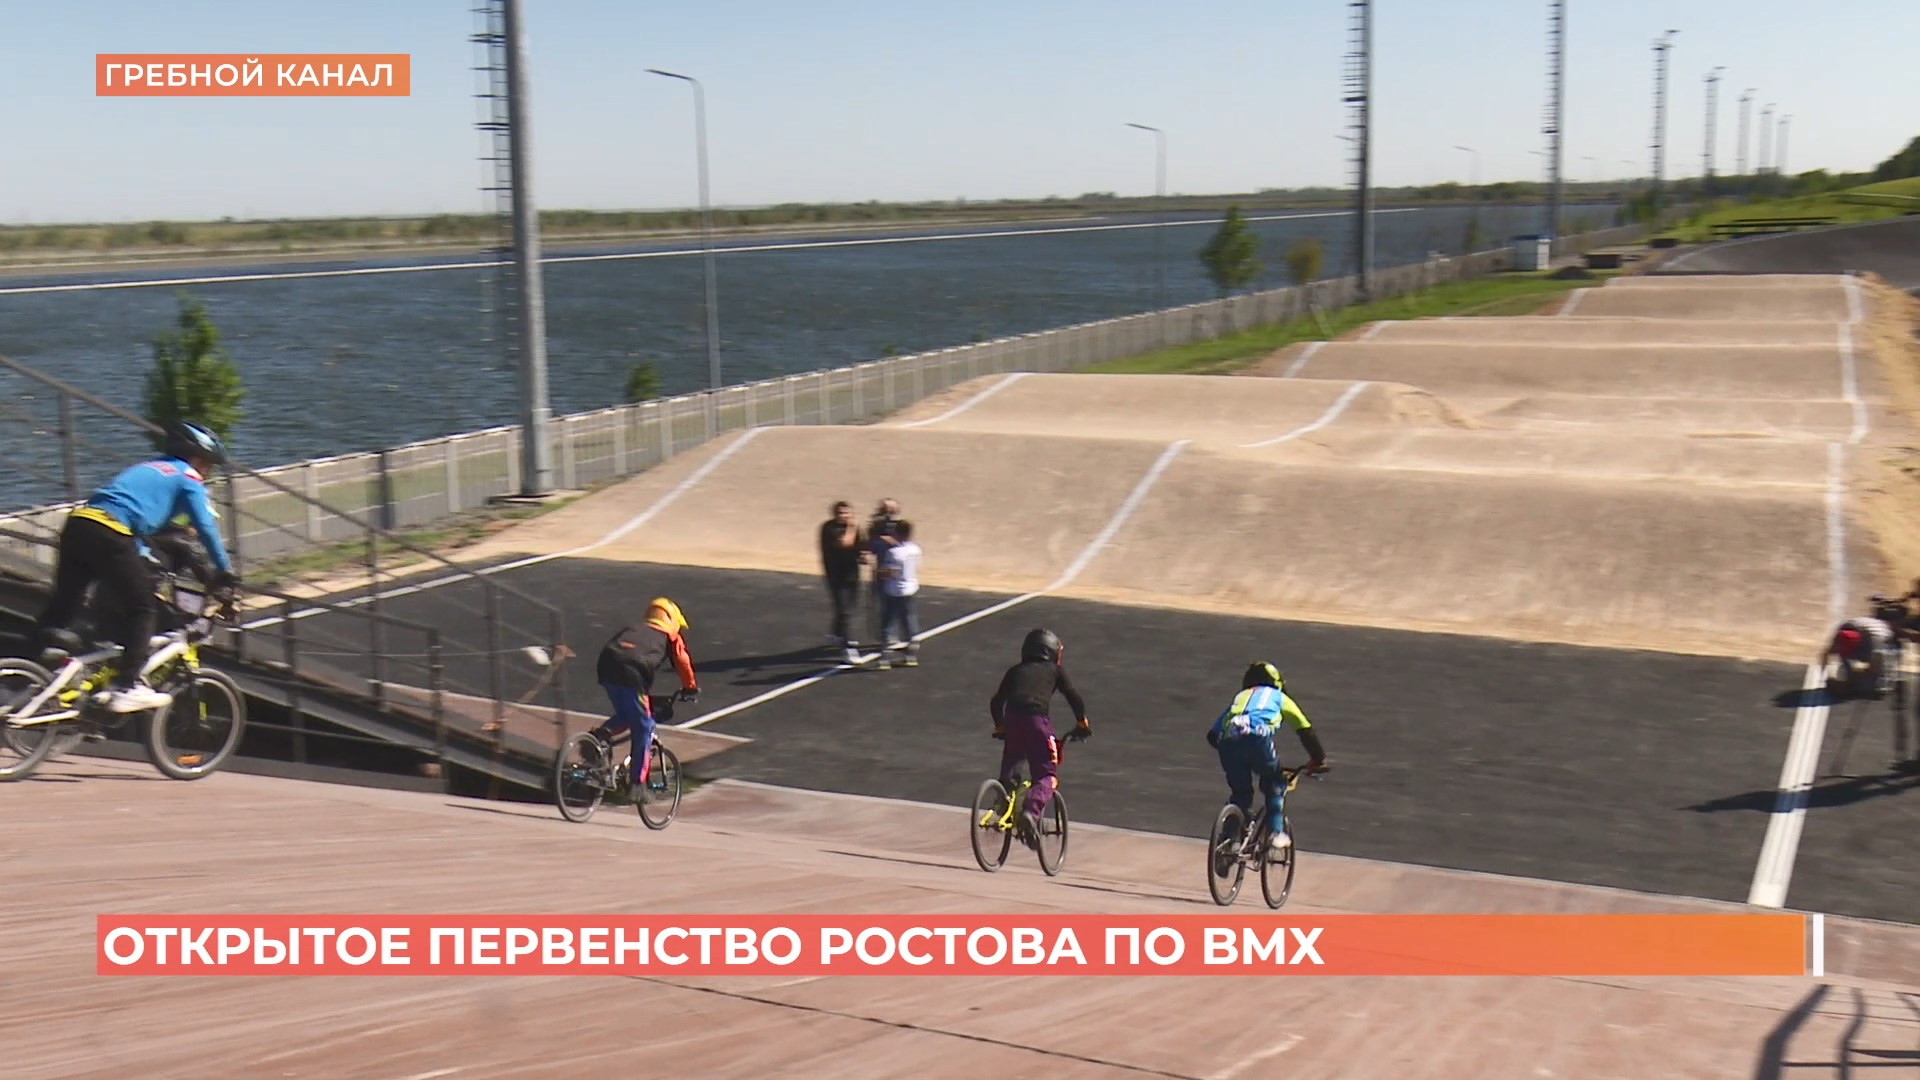 Новая трасса для велоспорта БиэМэкс открыта на гребном канале